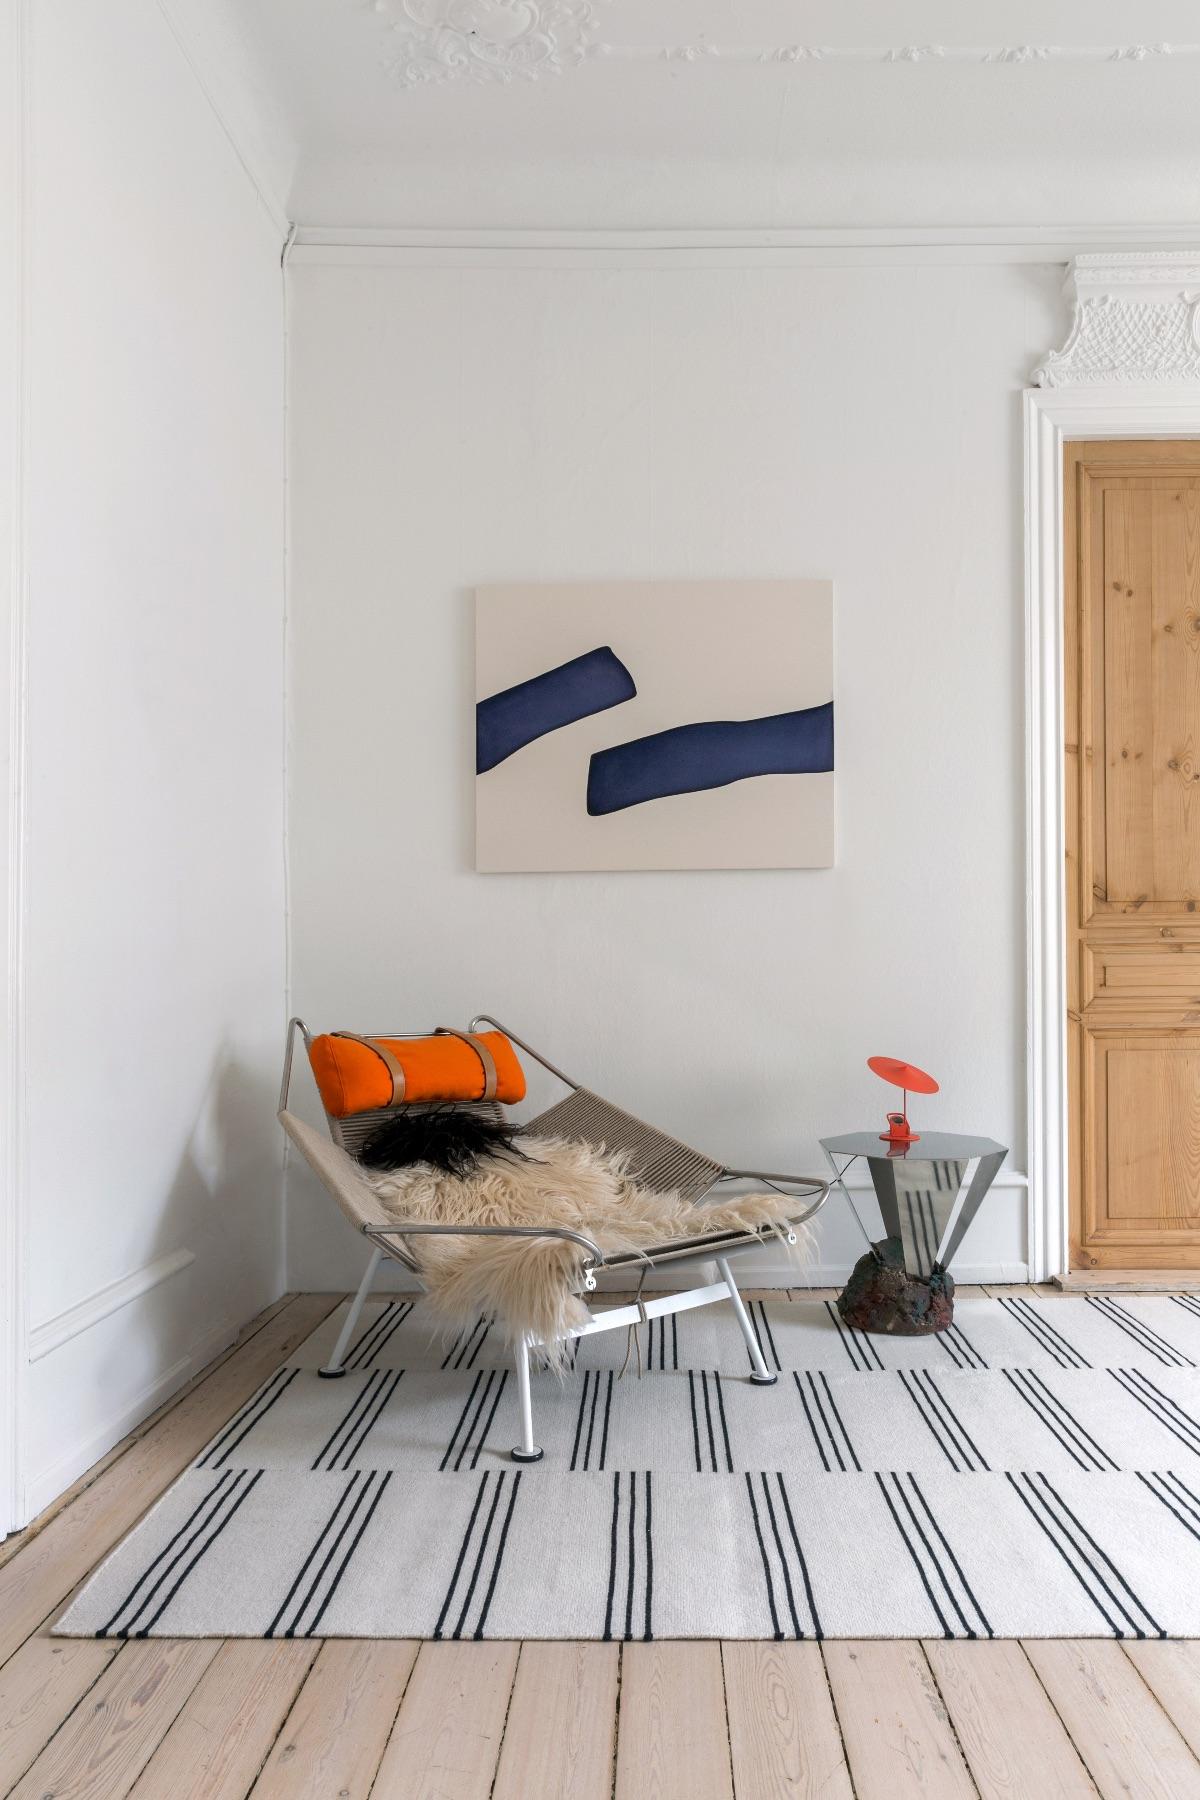 Stripes creme/schwarz ist ein moderner Dhurrie/Kilim-Teppich im skandinavischen Design.
Es ist zu beachten, dass die Lieferzeiten je nach Größe zwischen 6 Tagen und 9 Wochen variieren.

Das Ziegelsteinmuster verleiht dem Teppich einen einzigartigen